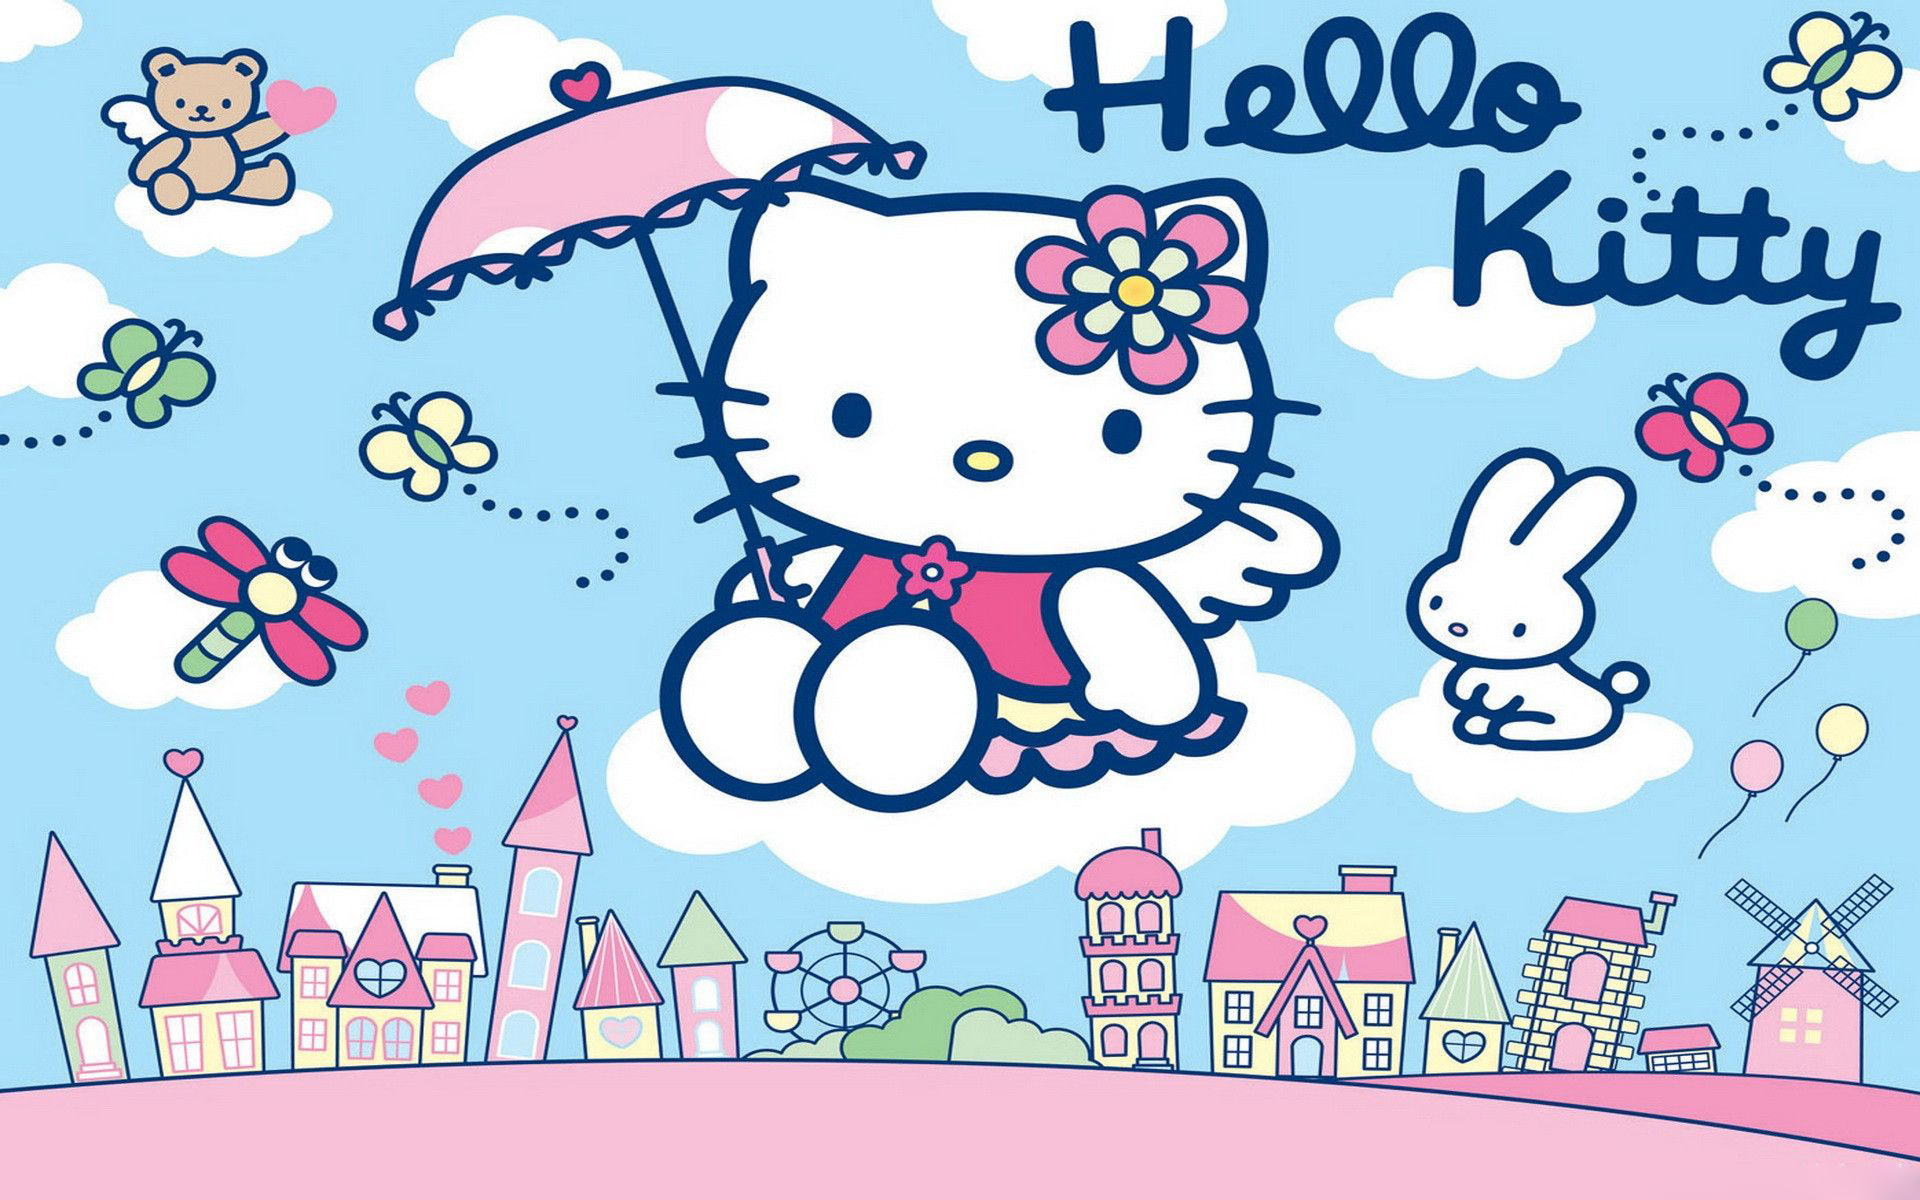  Hello  Kitty  Wallpaper  HD  PixelsTalk Net